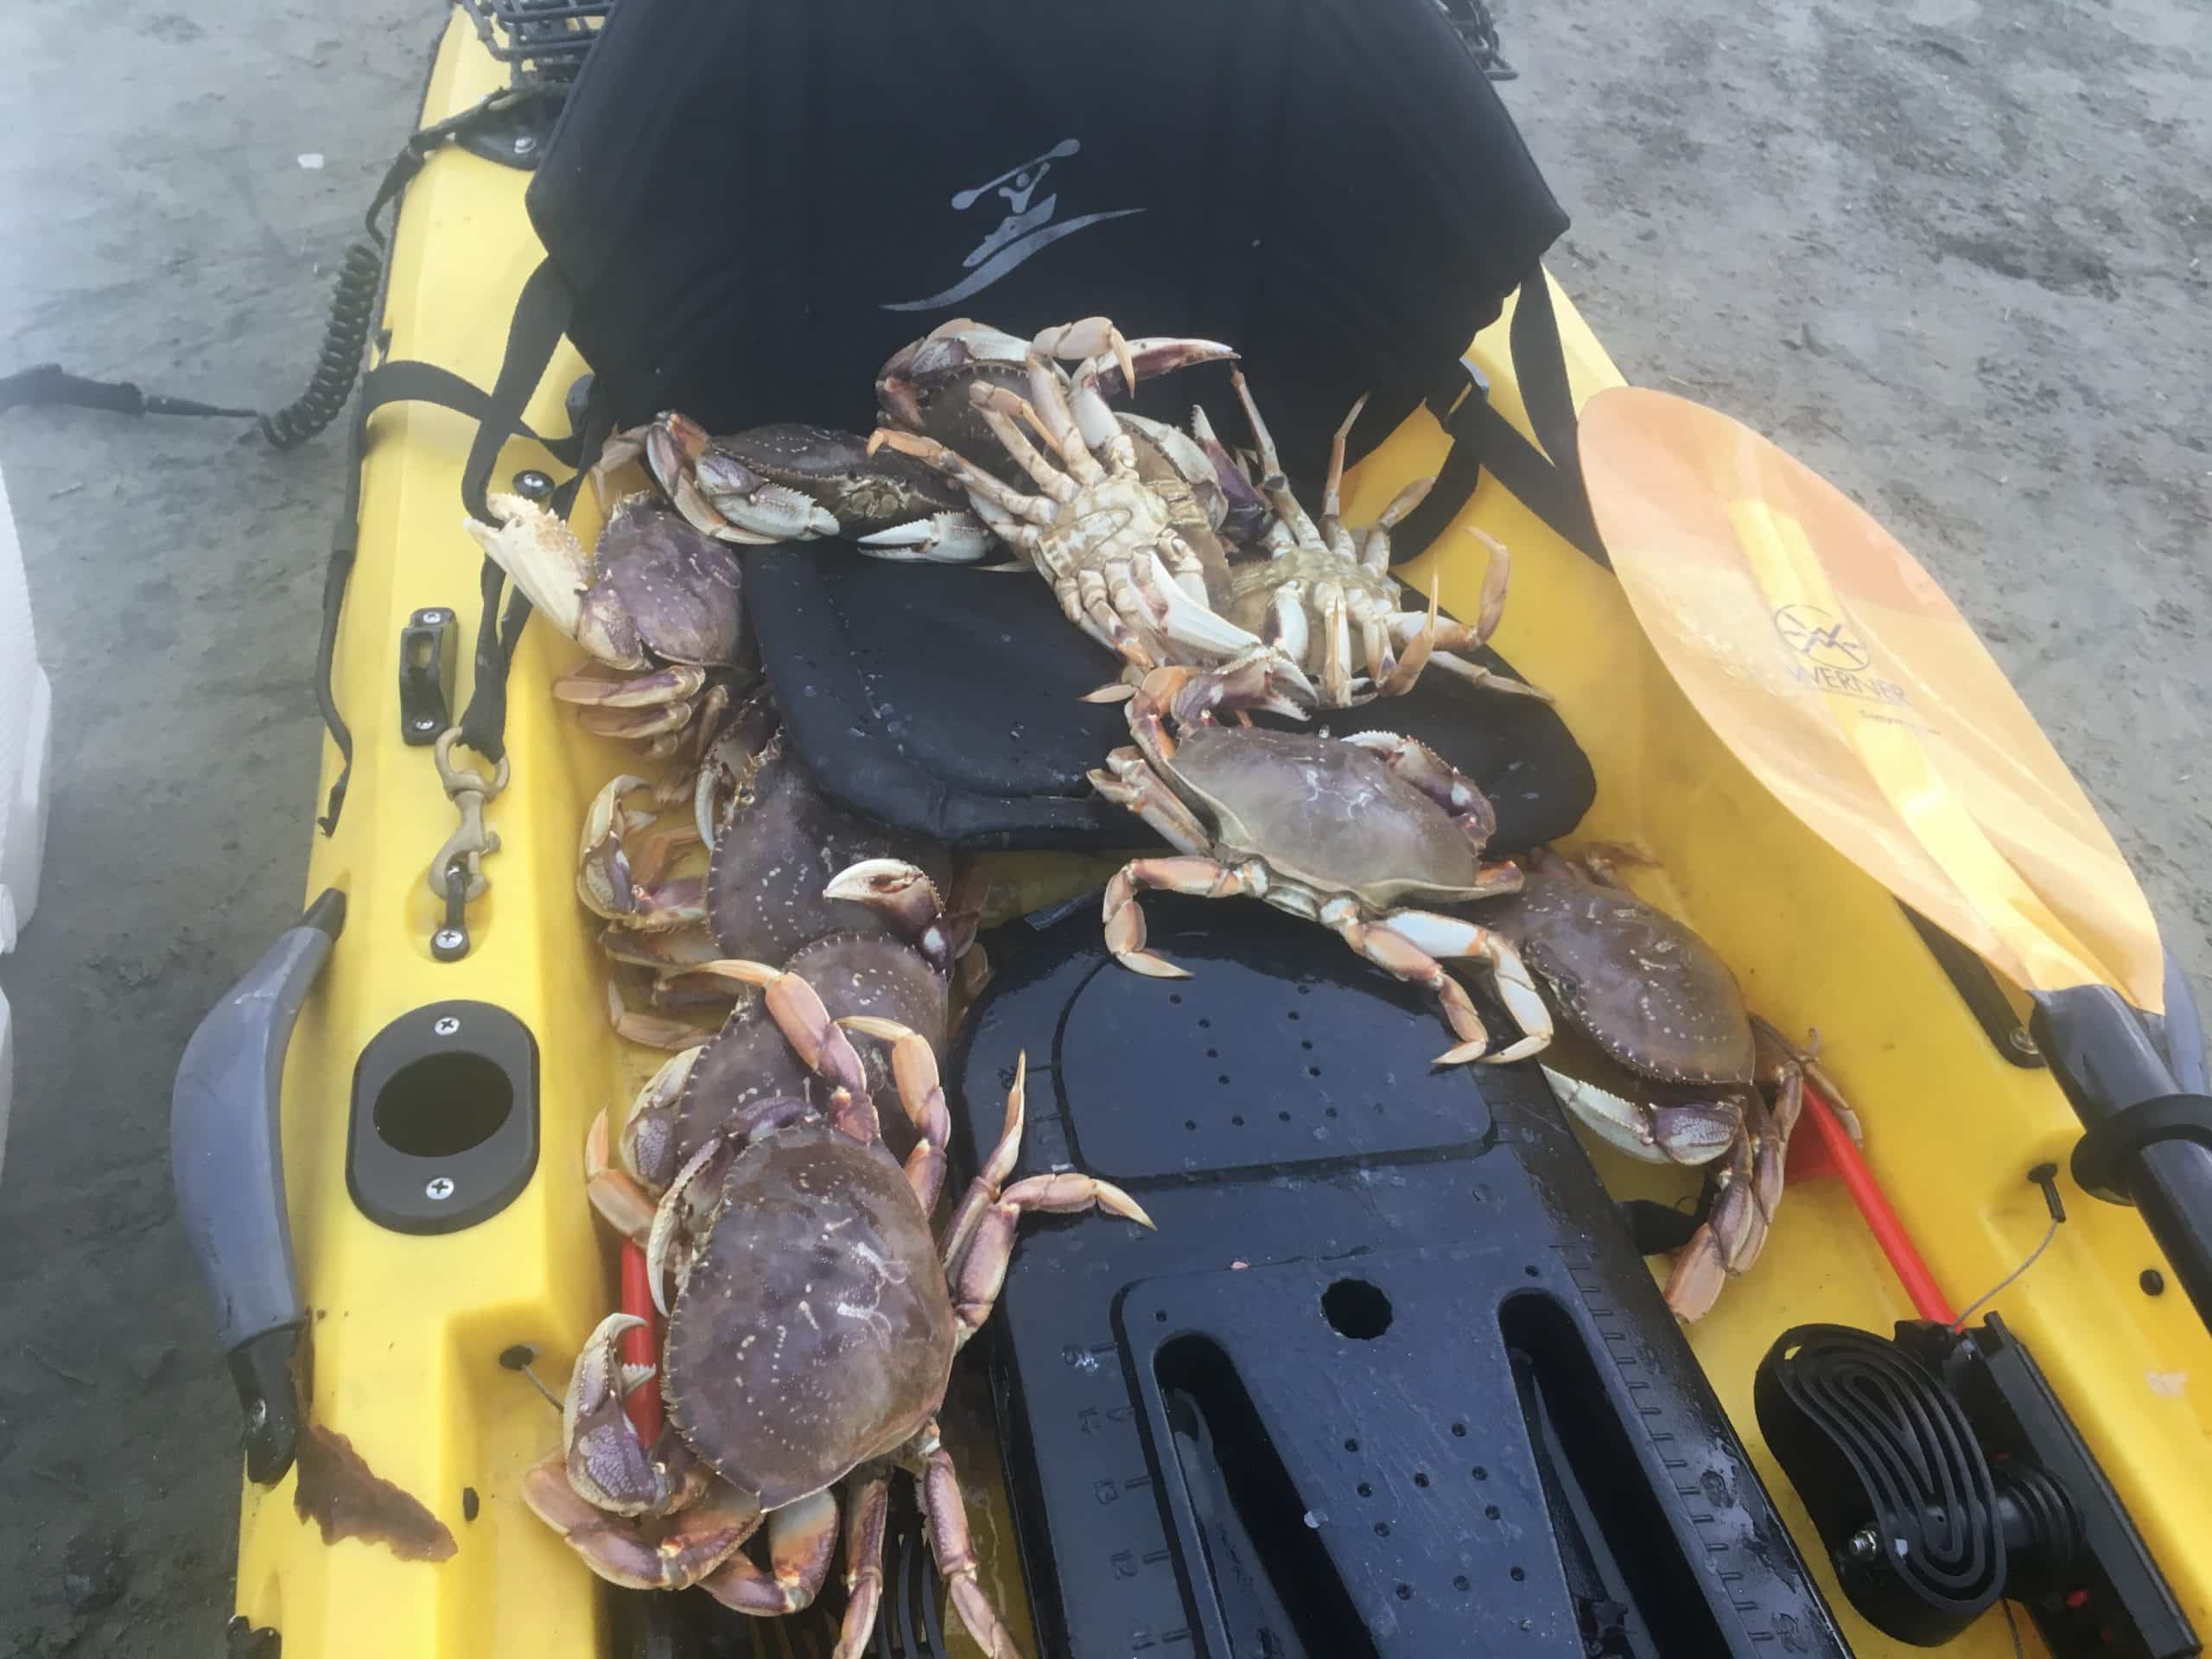 Dungeness crab at Half Moon Bay - Paubox